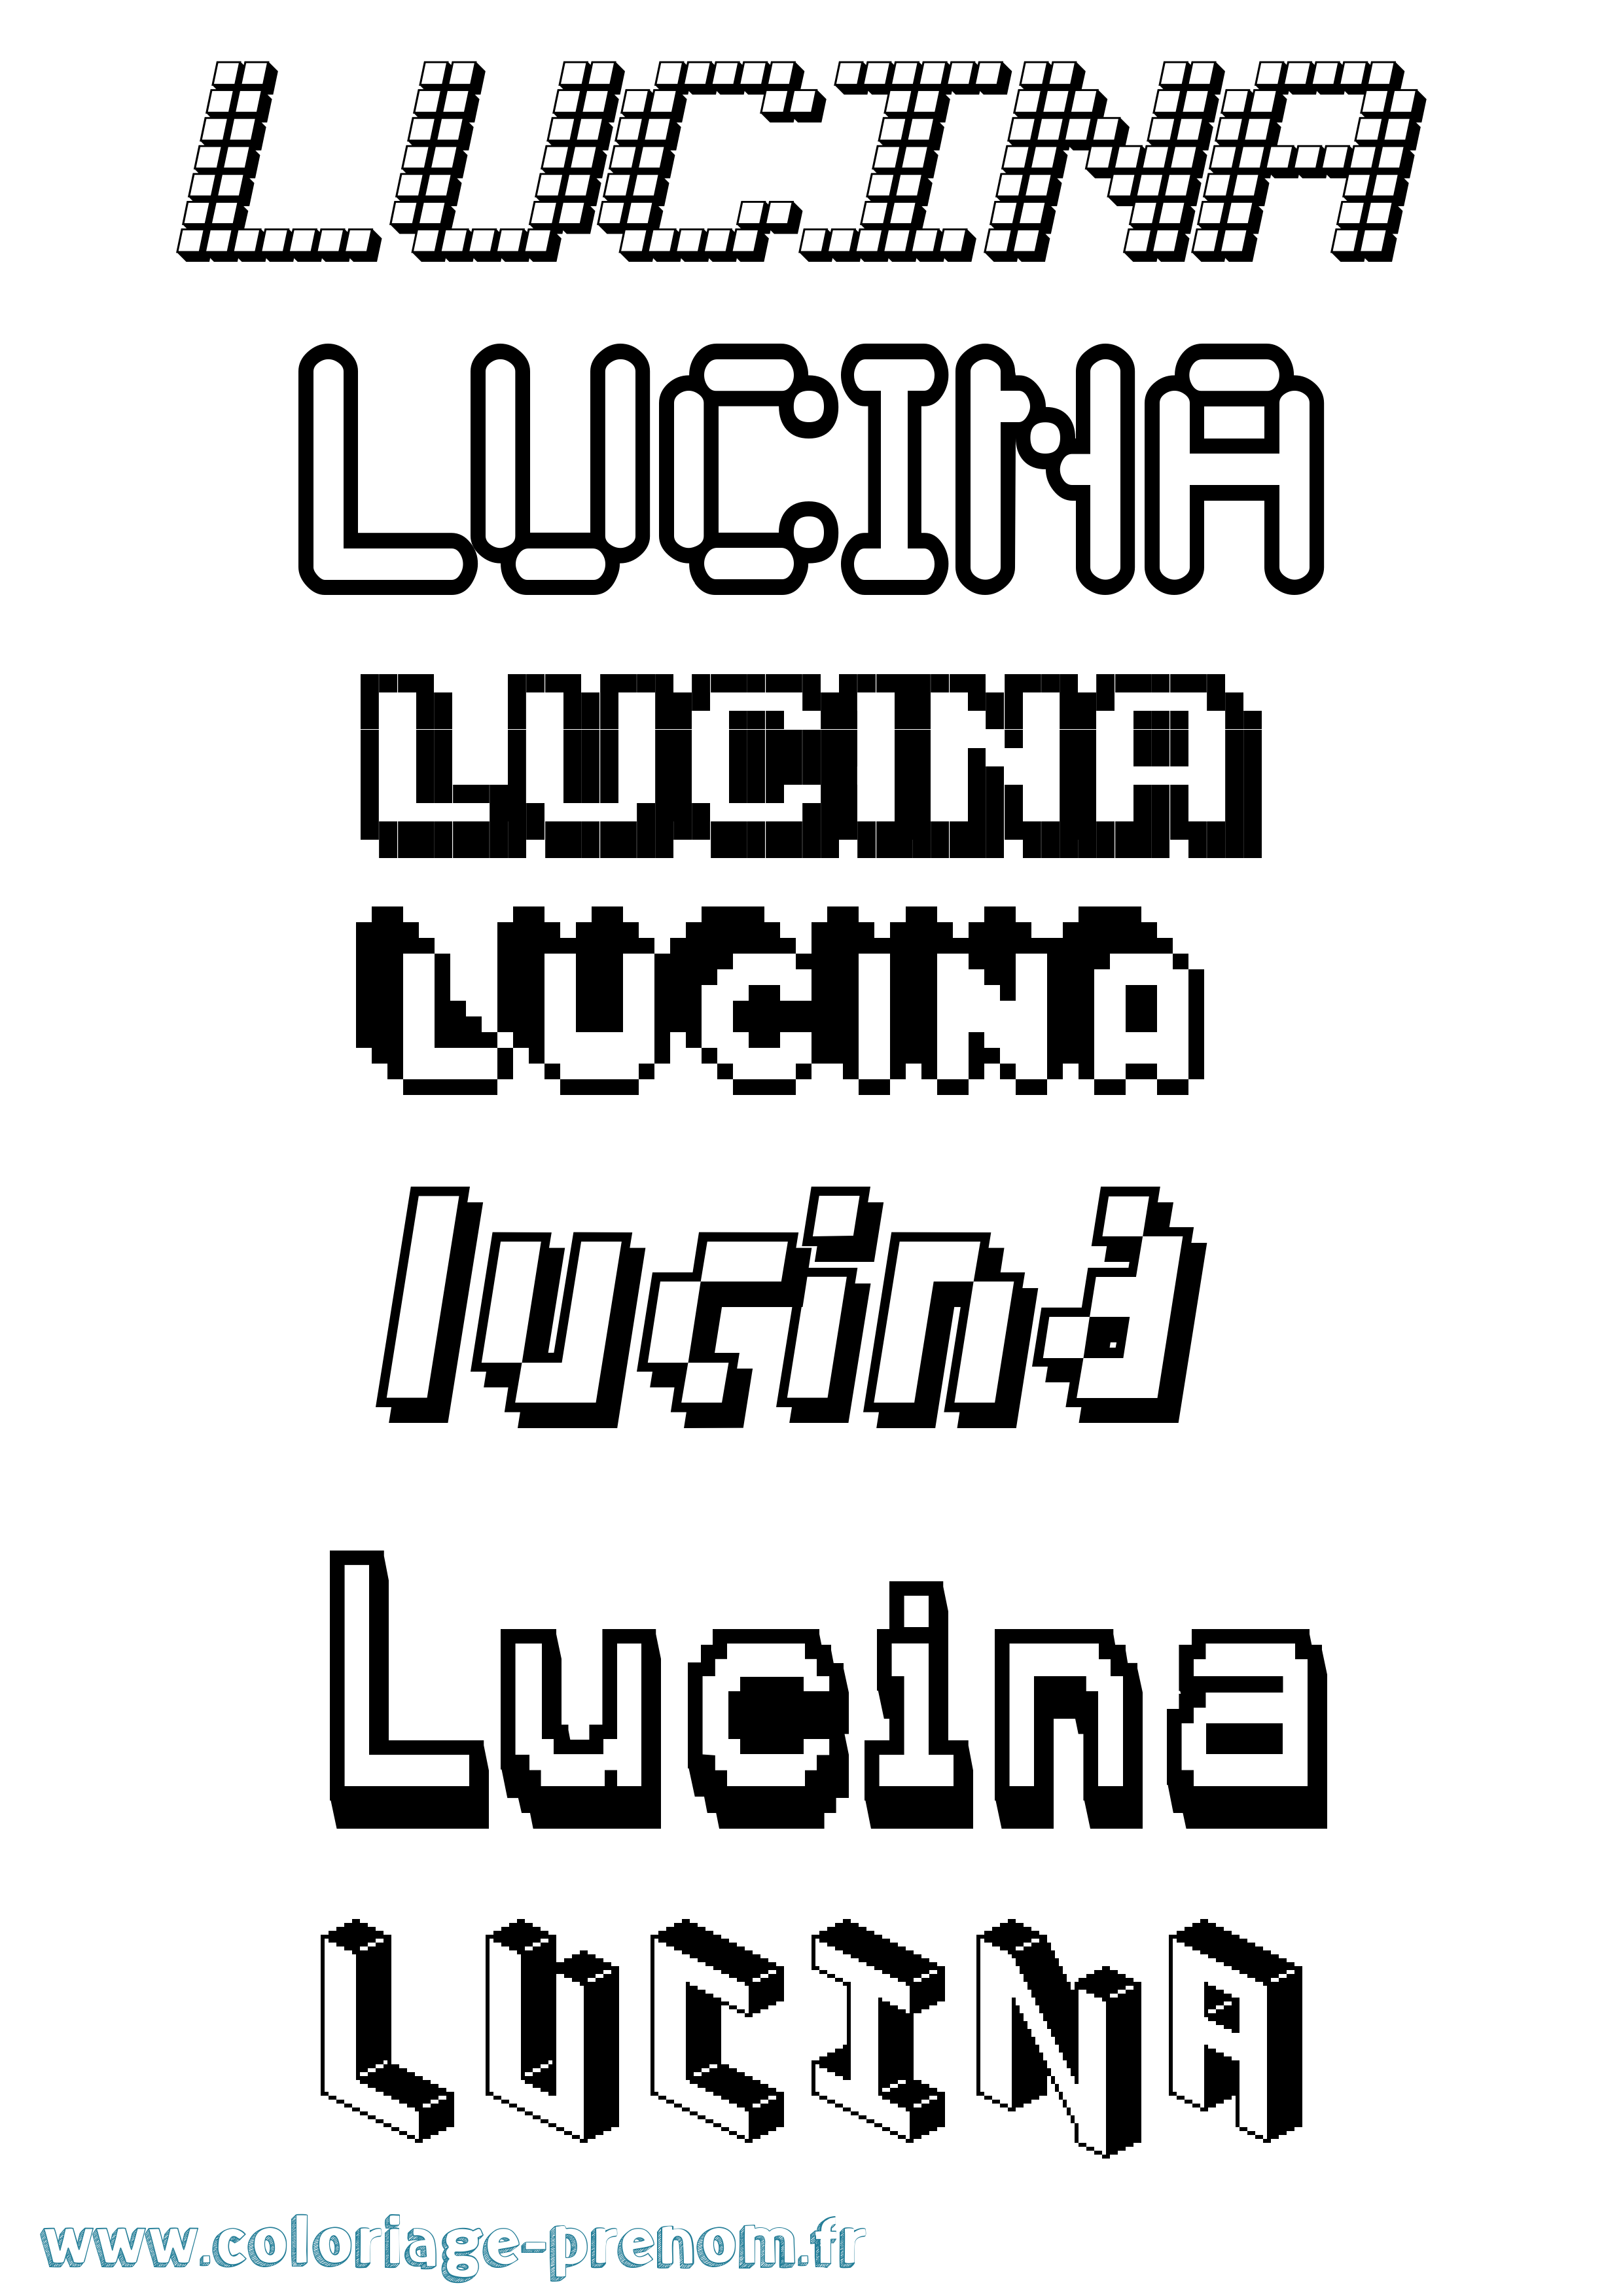 Coloriage prénom Lucina Pixel